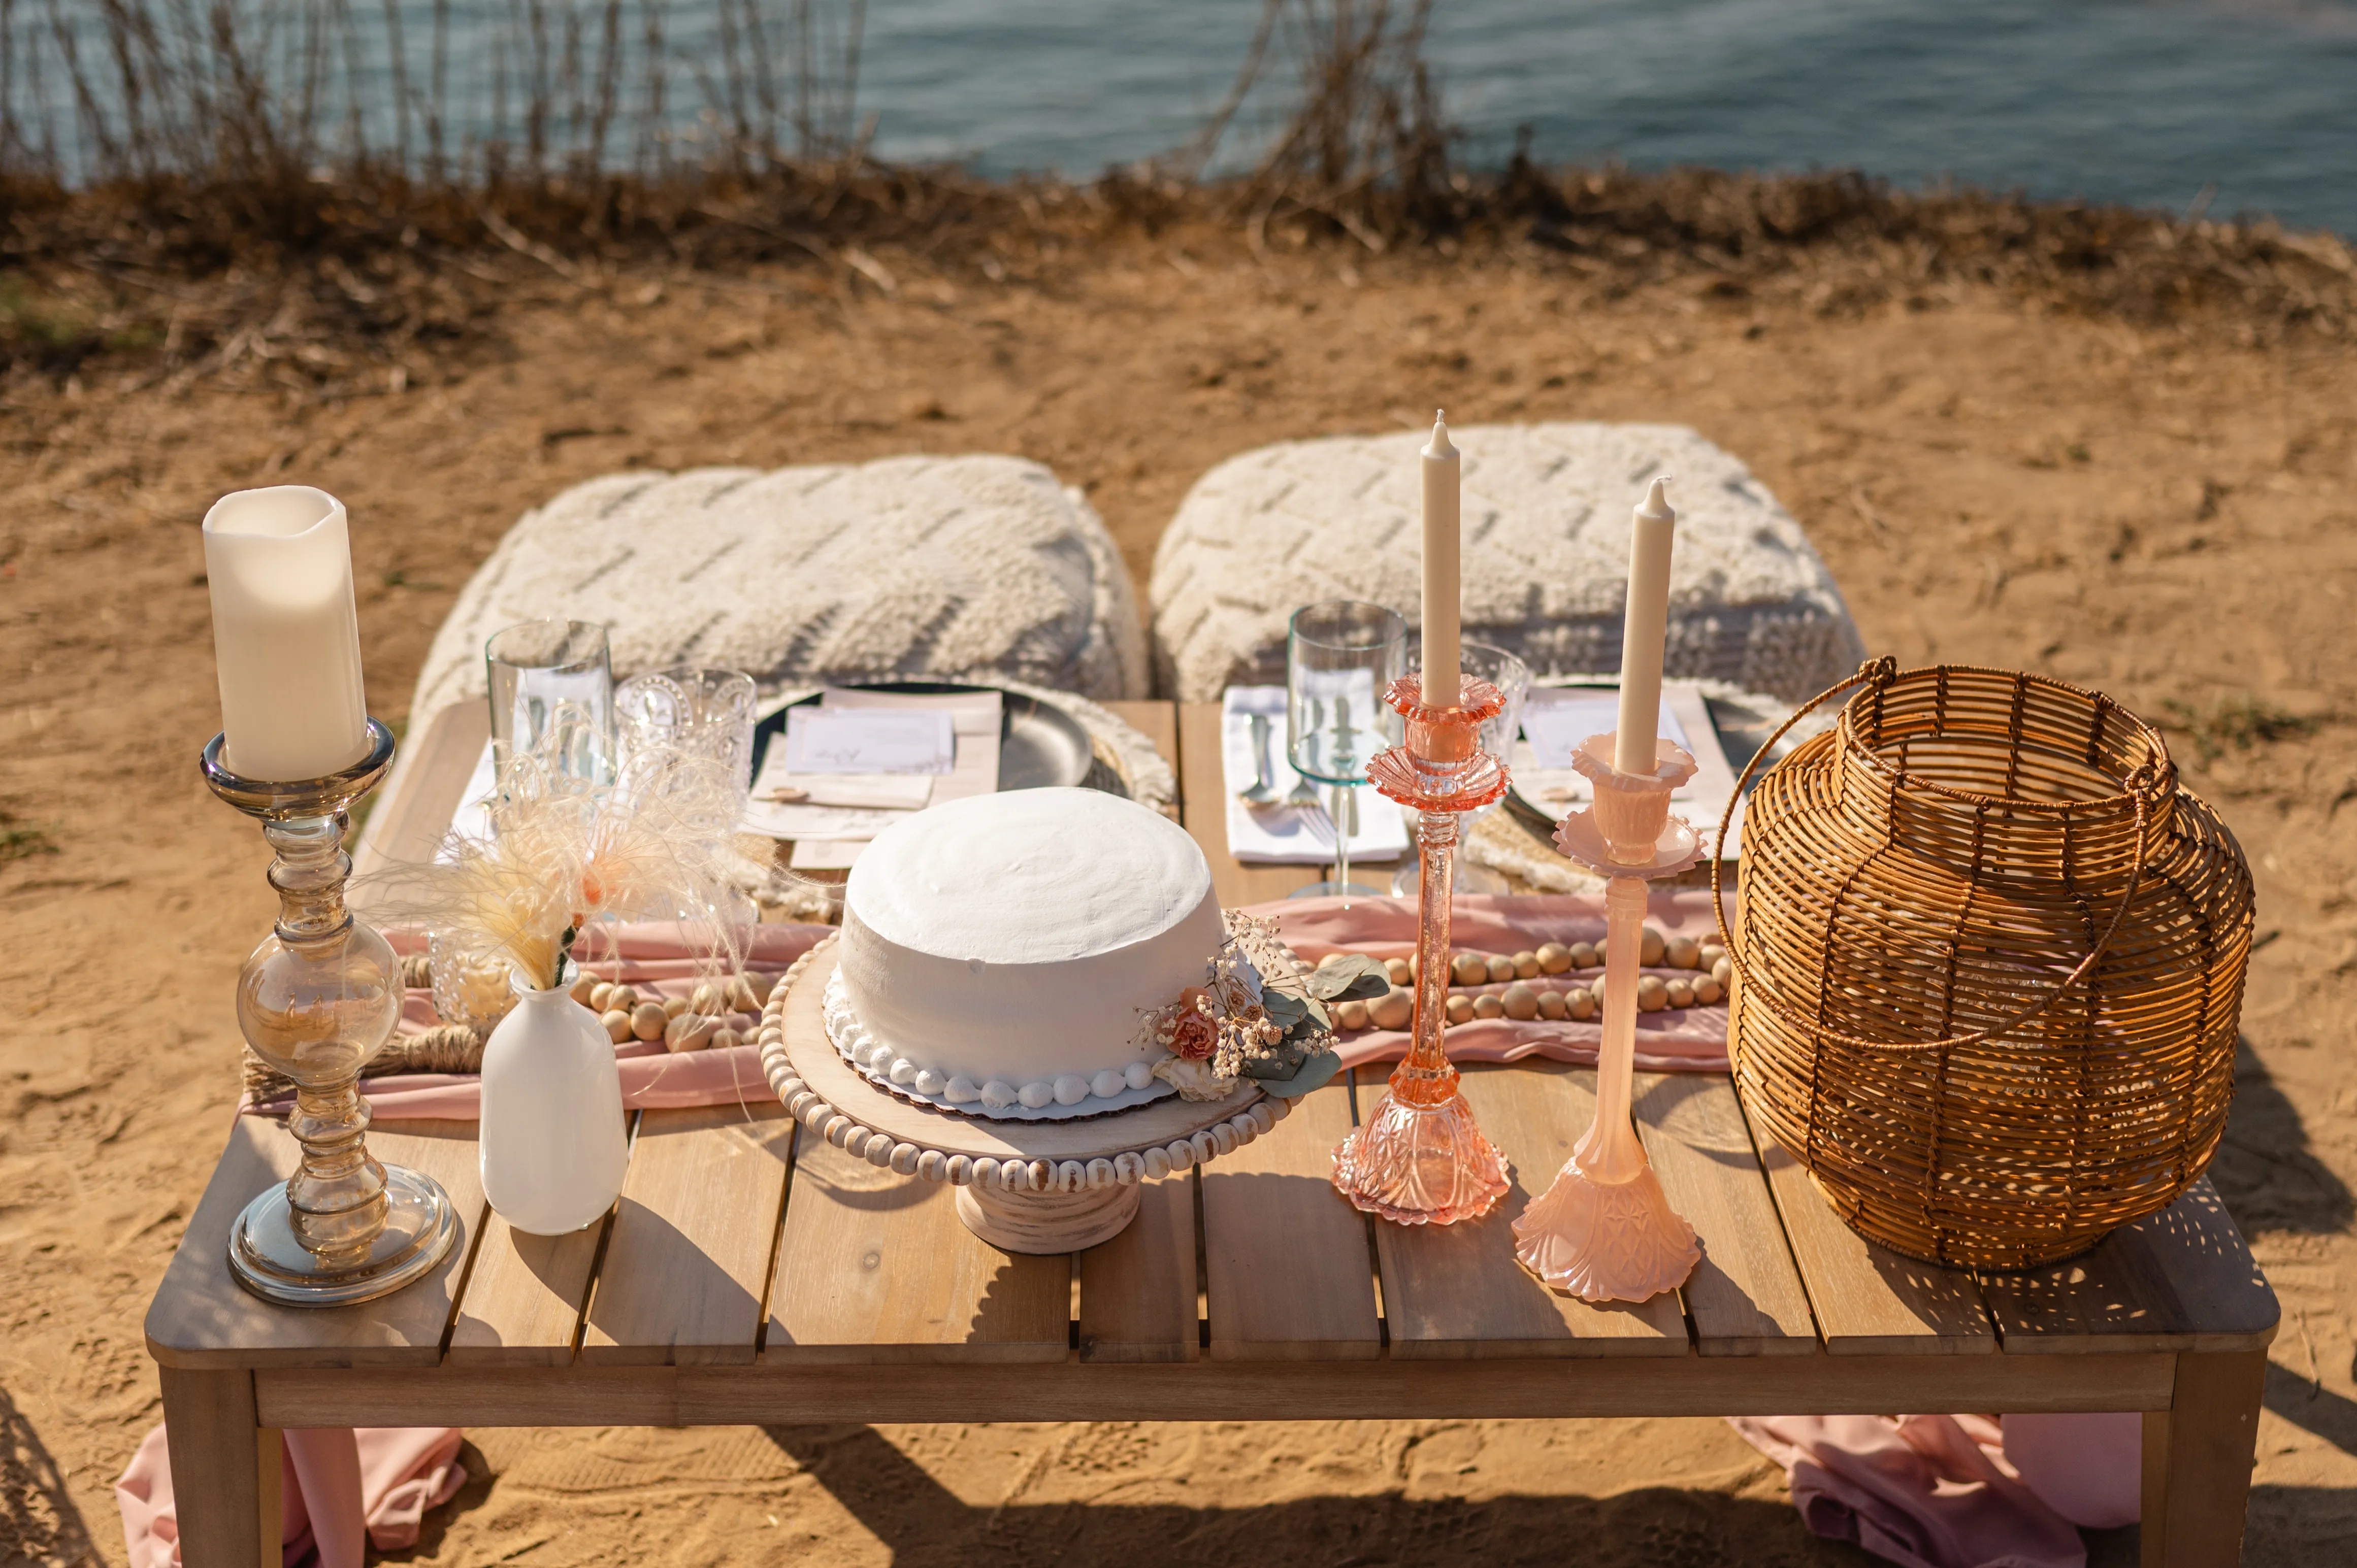 A picnic setup for a wedding